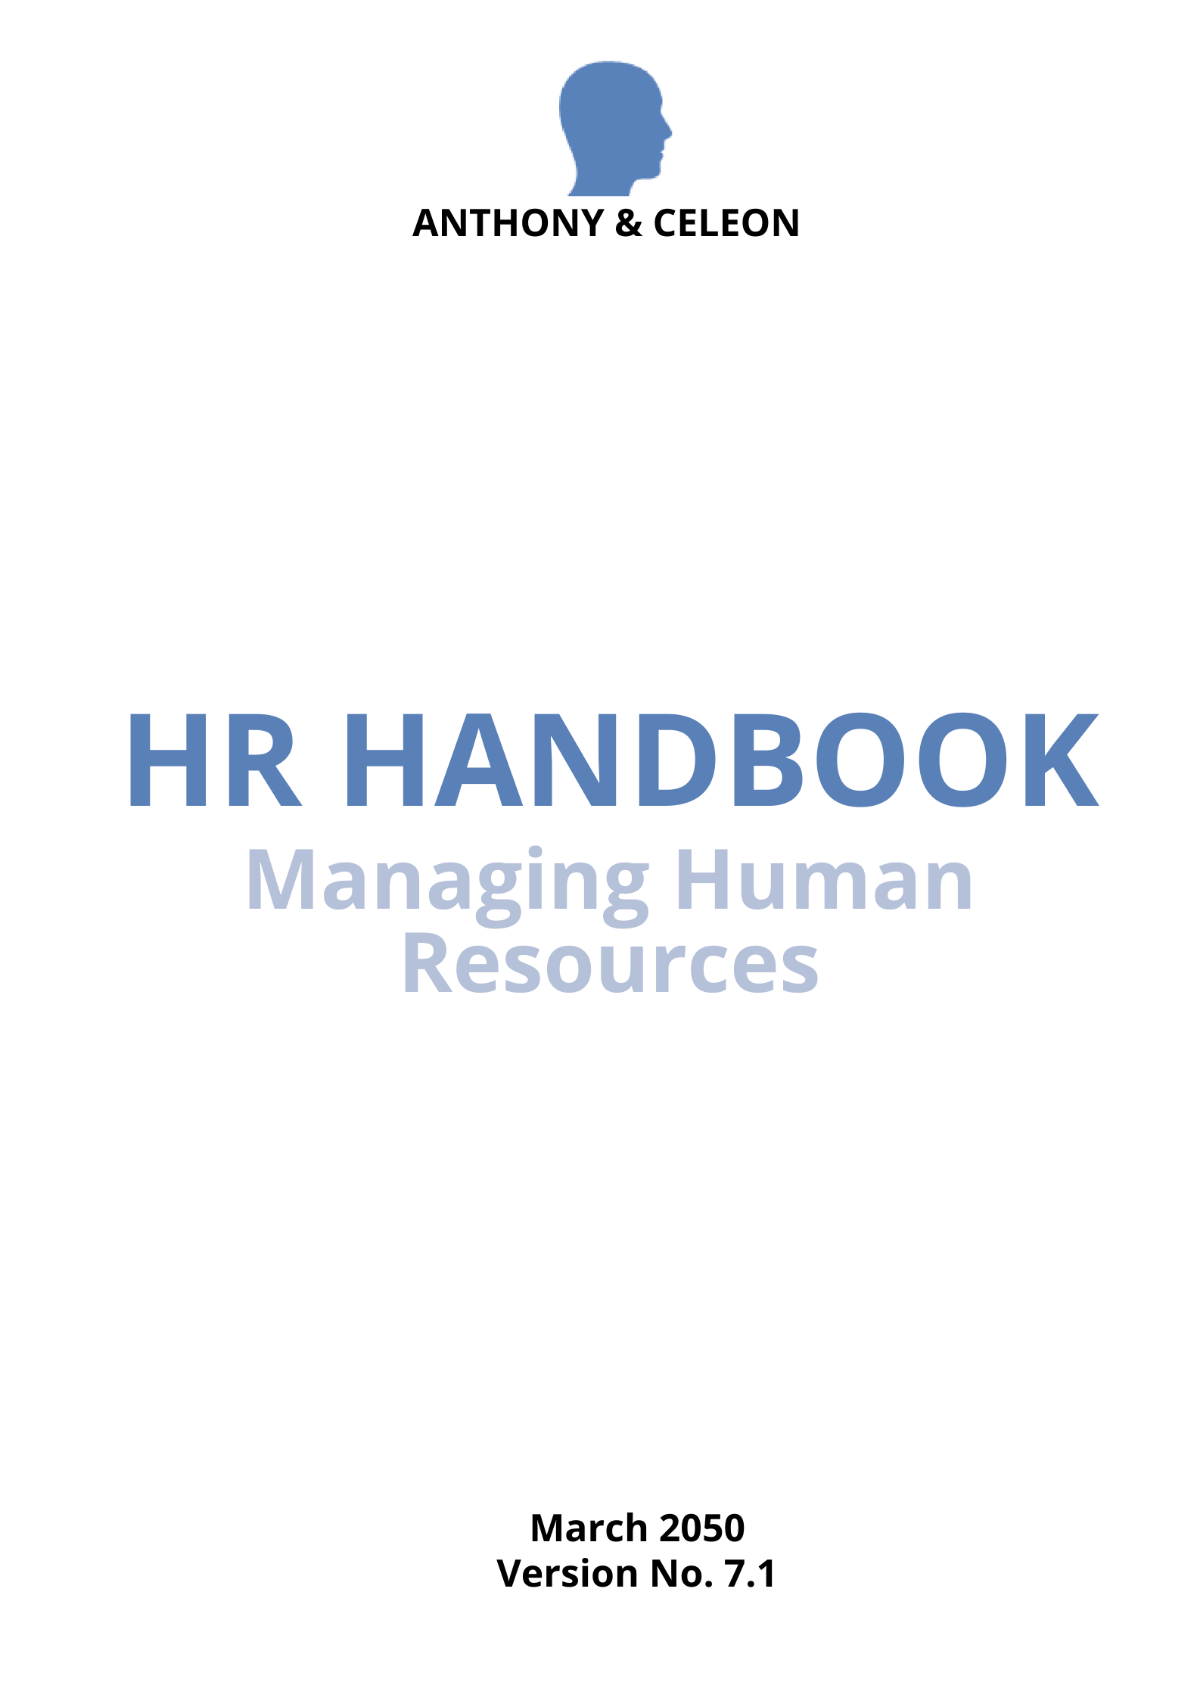 HR Handbook Template